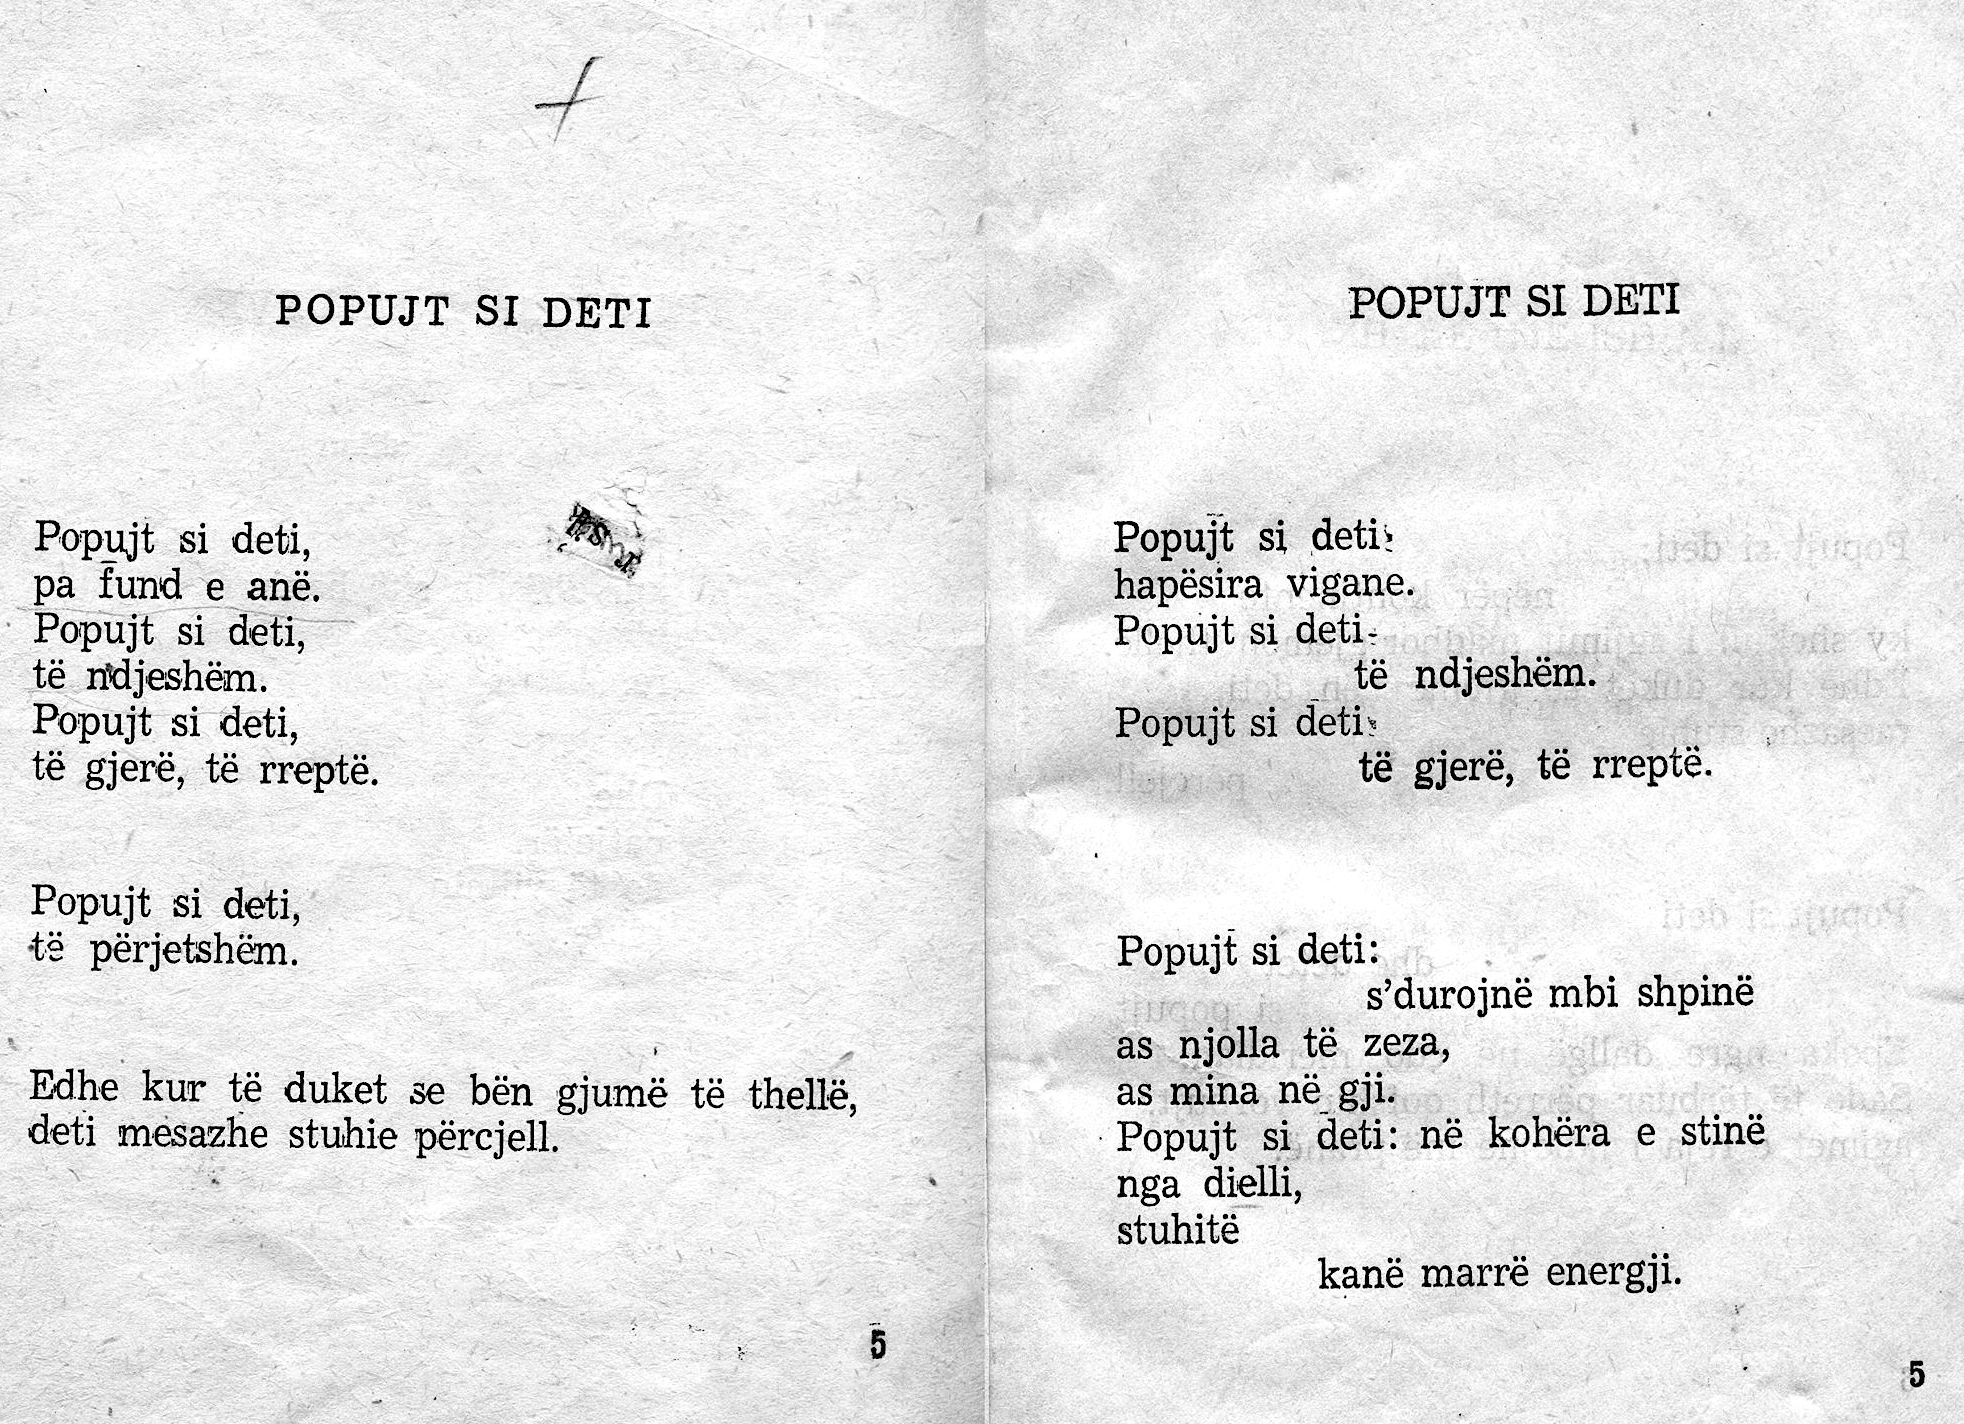 Majtas poezia e shkruajtur nga Sollaku, djathtas vargje te futur nga redaksia. @ Sh. S. Noé